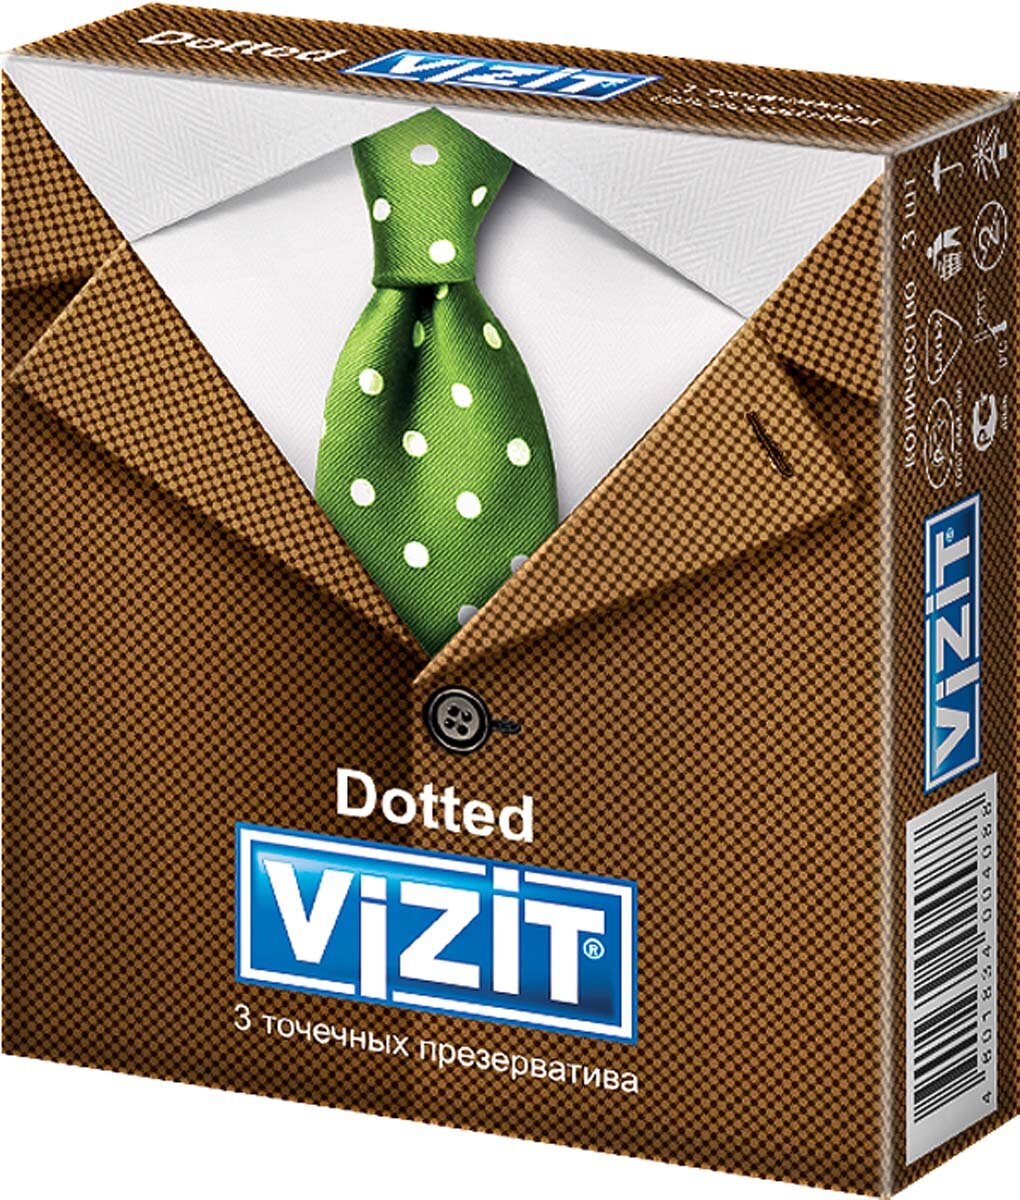 VIZIT Dotted   3 .